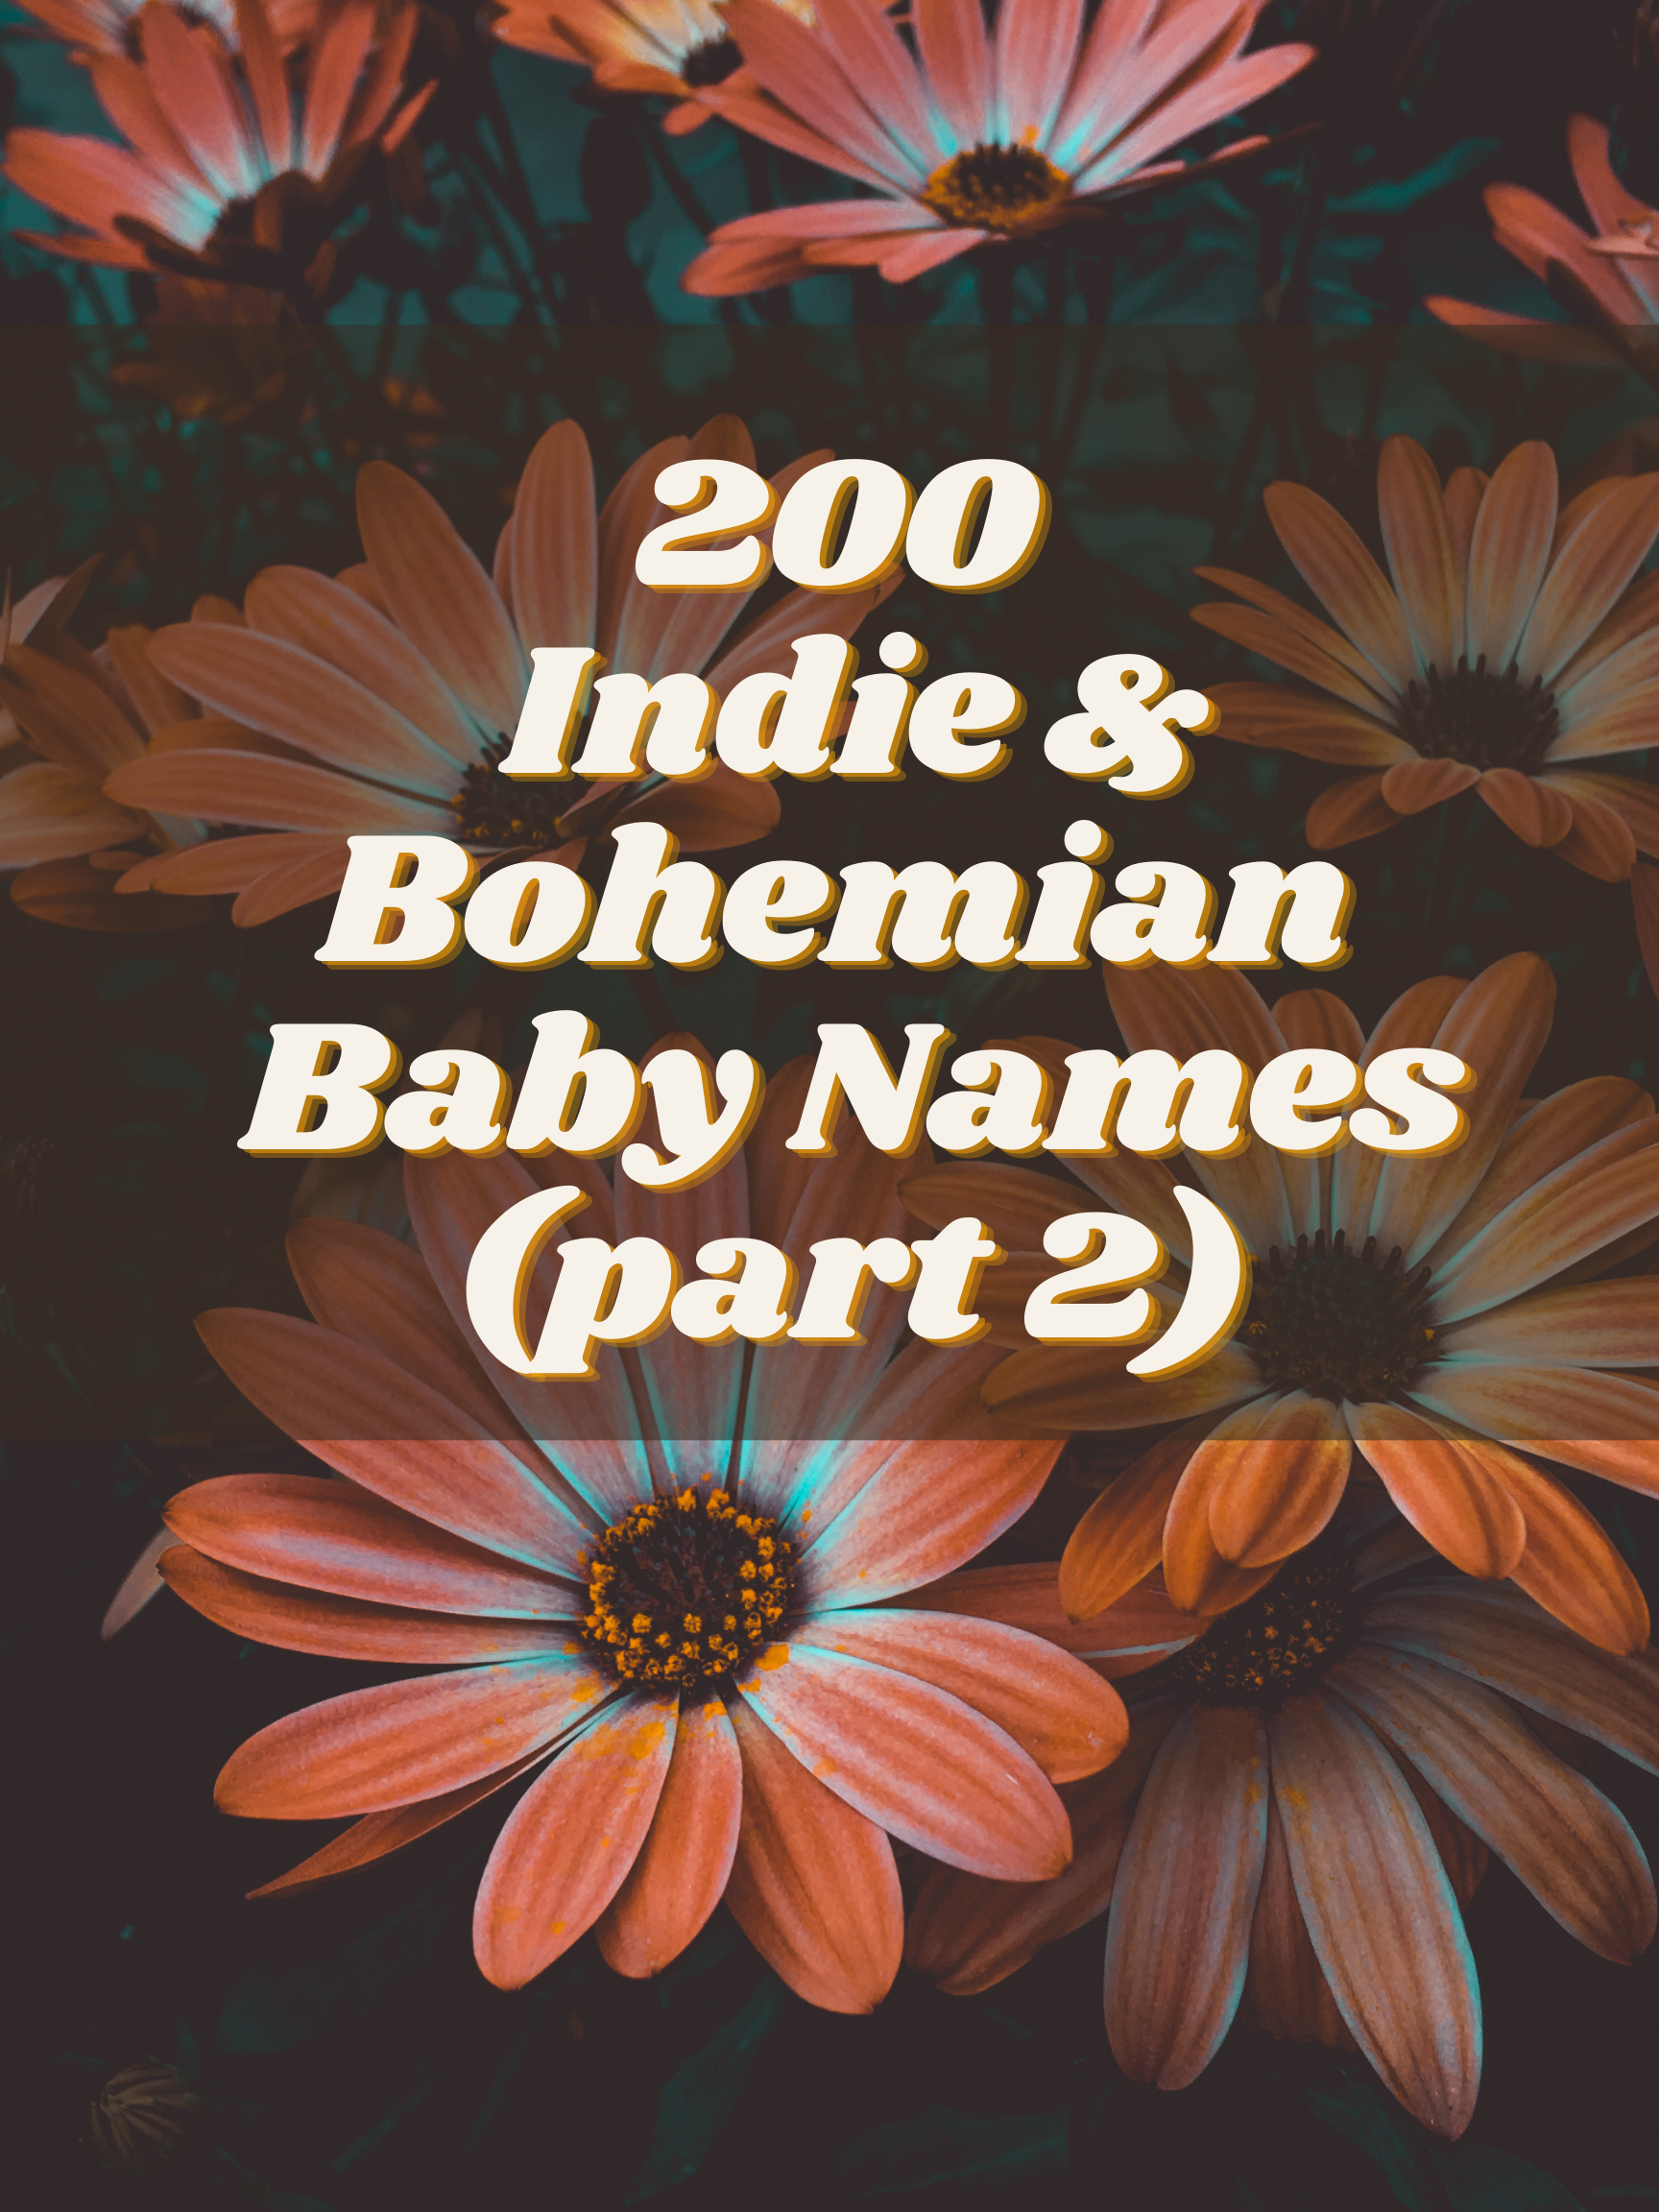 200 Indie + Bohemian Baby Names, part 2